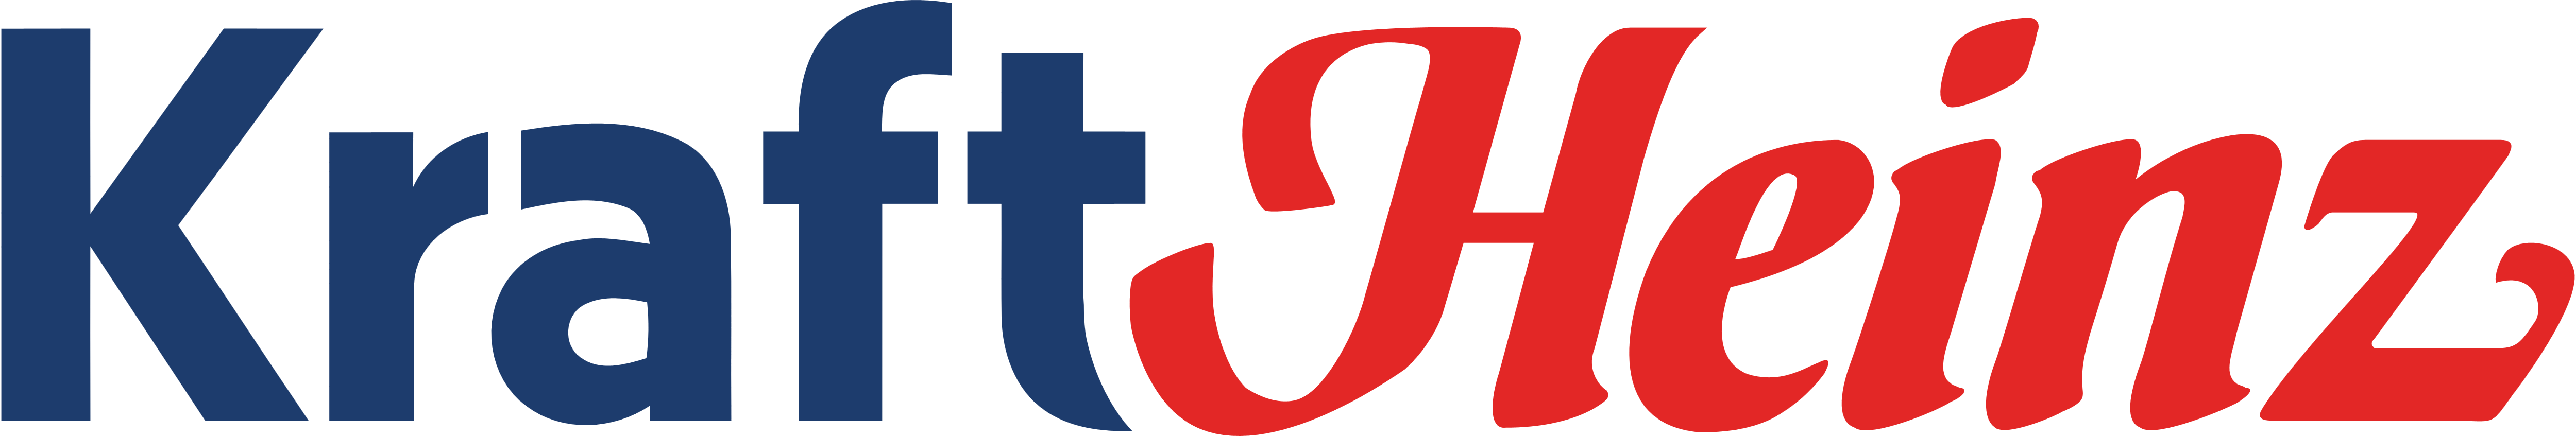 Kraft_Heinz_logo_logotype